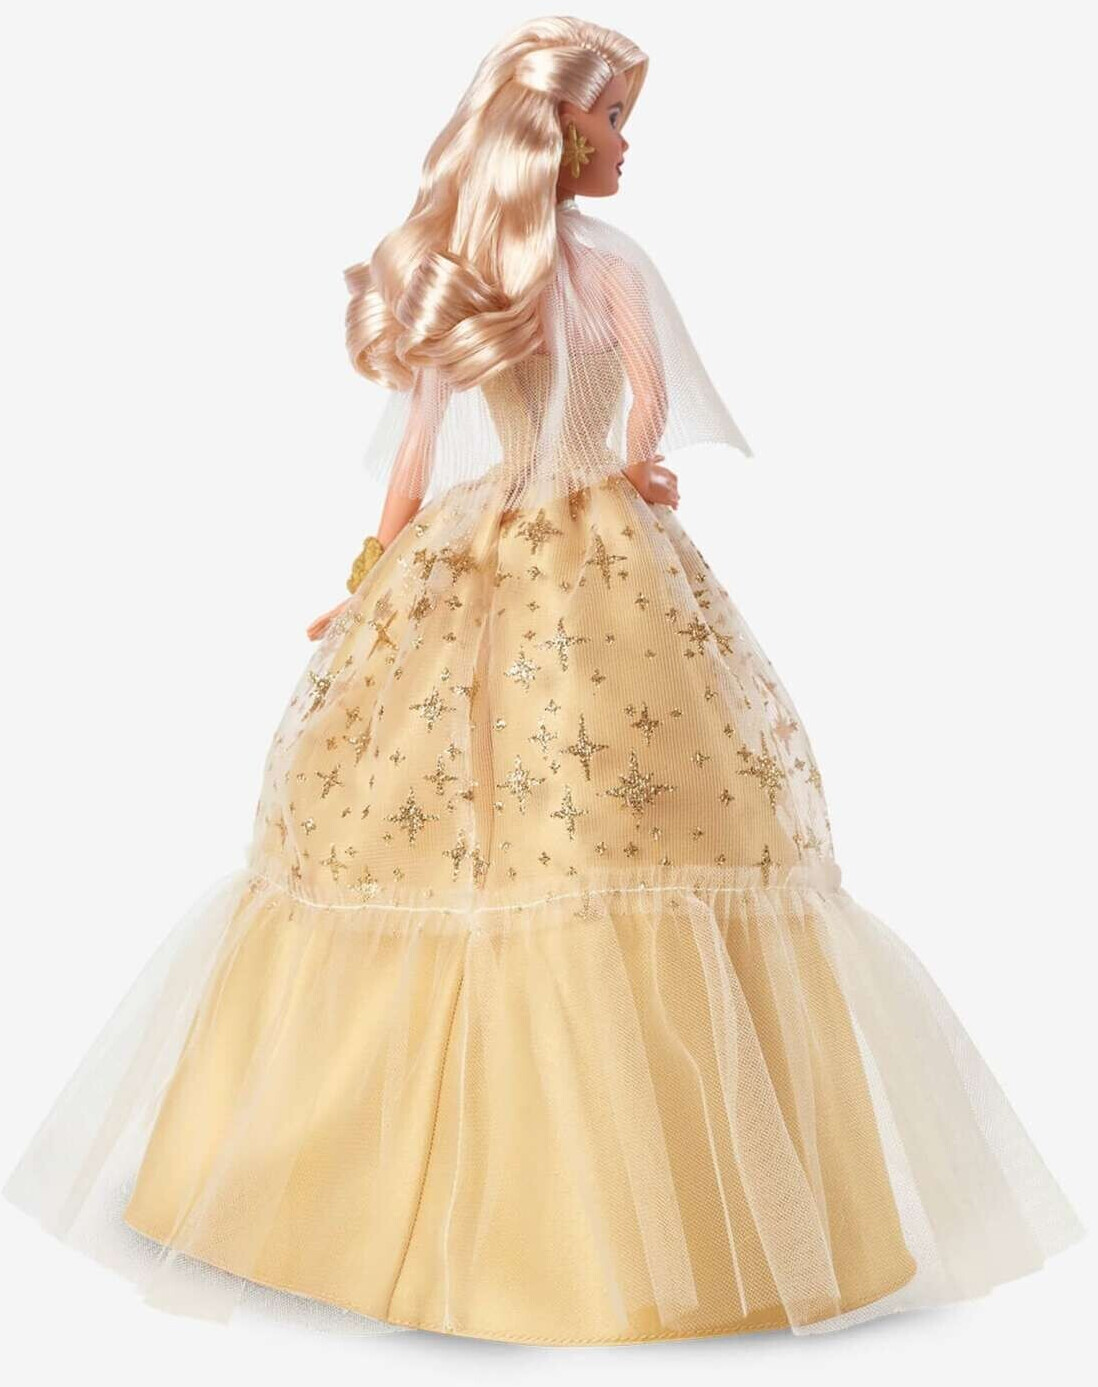 Barbie Signature - BarbieJoyeux Noël 2021, 30,48cm, blonds ondulés